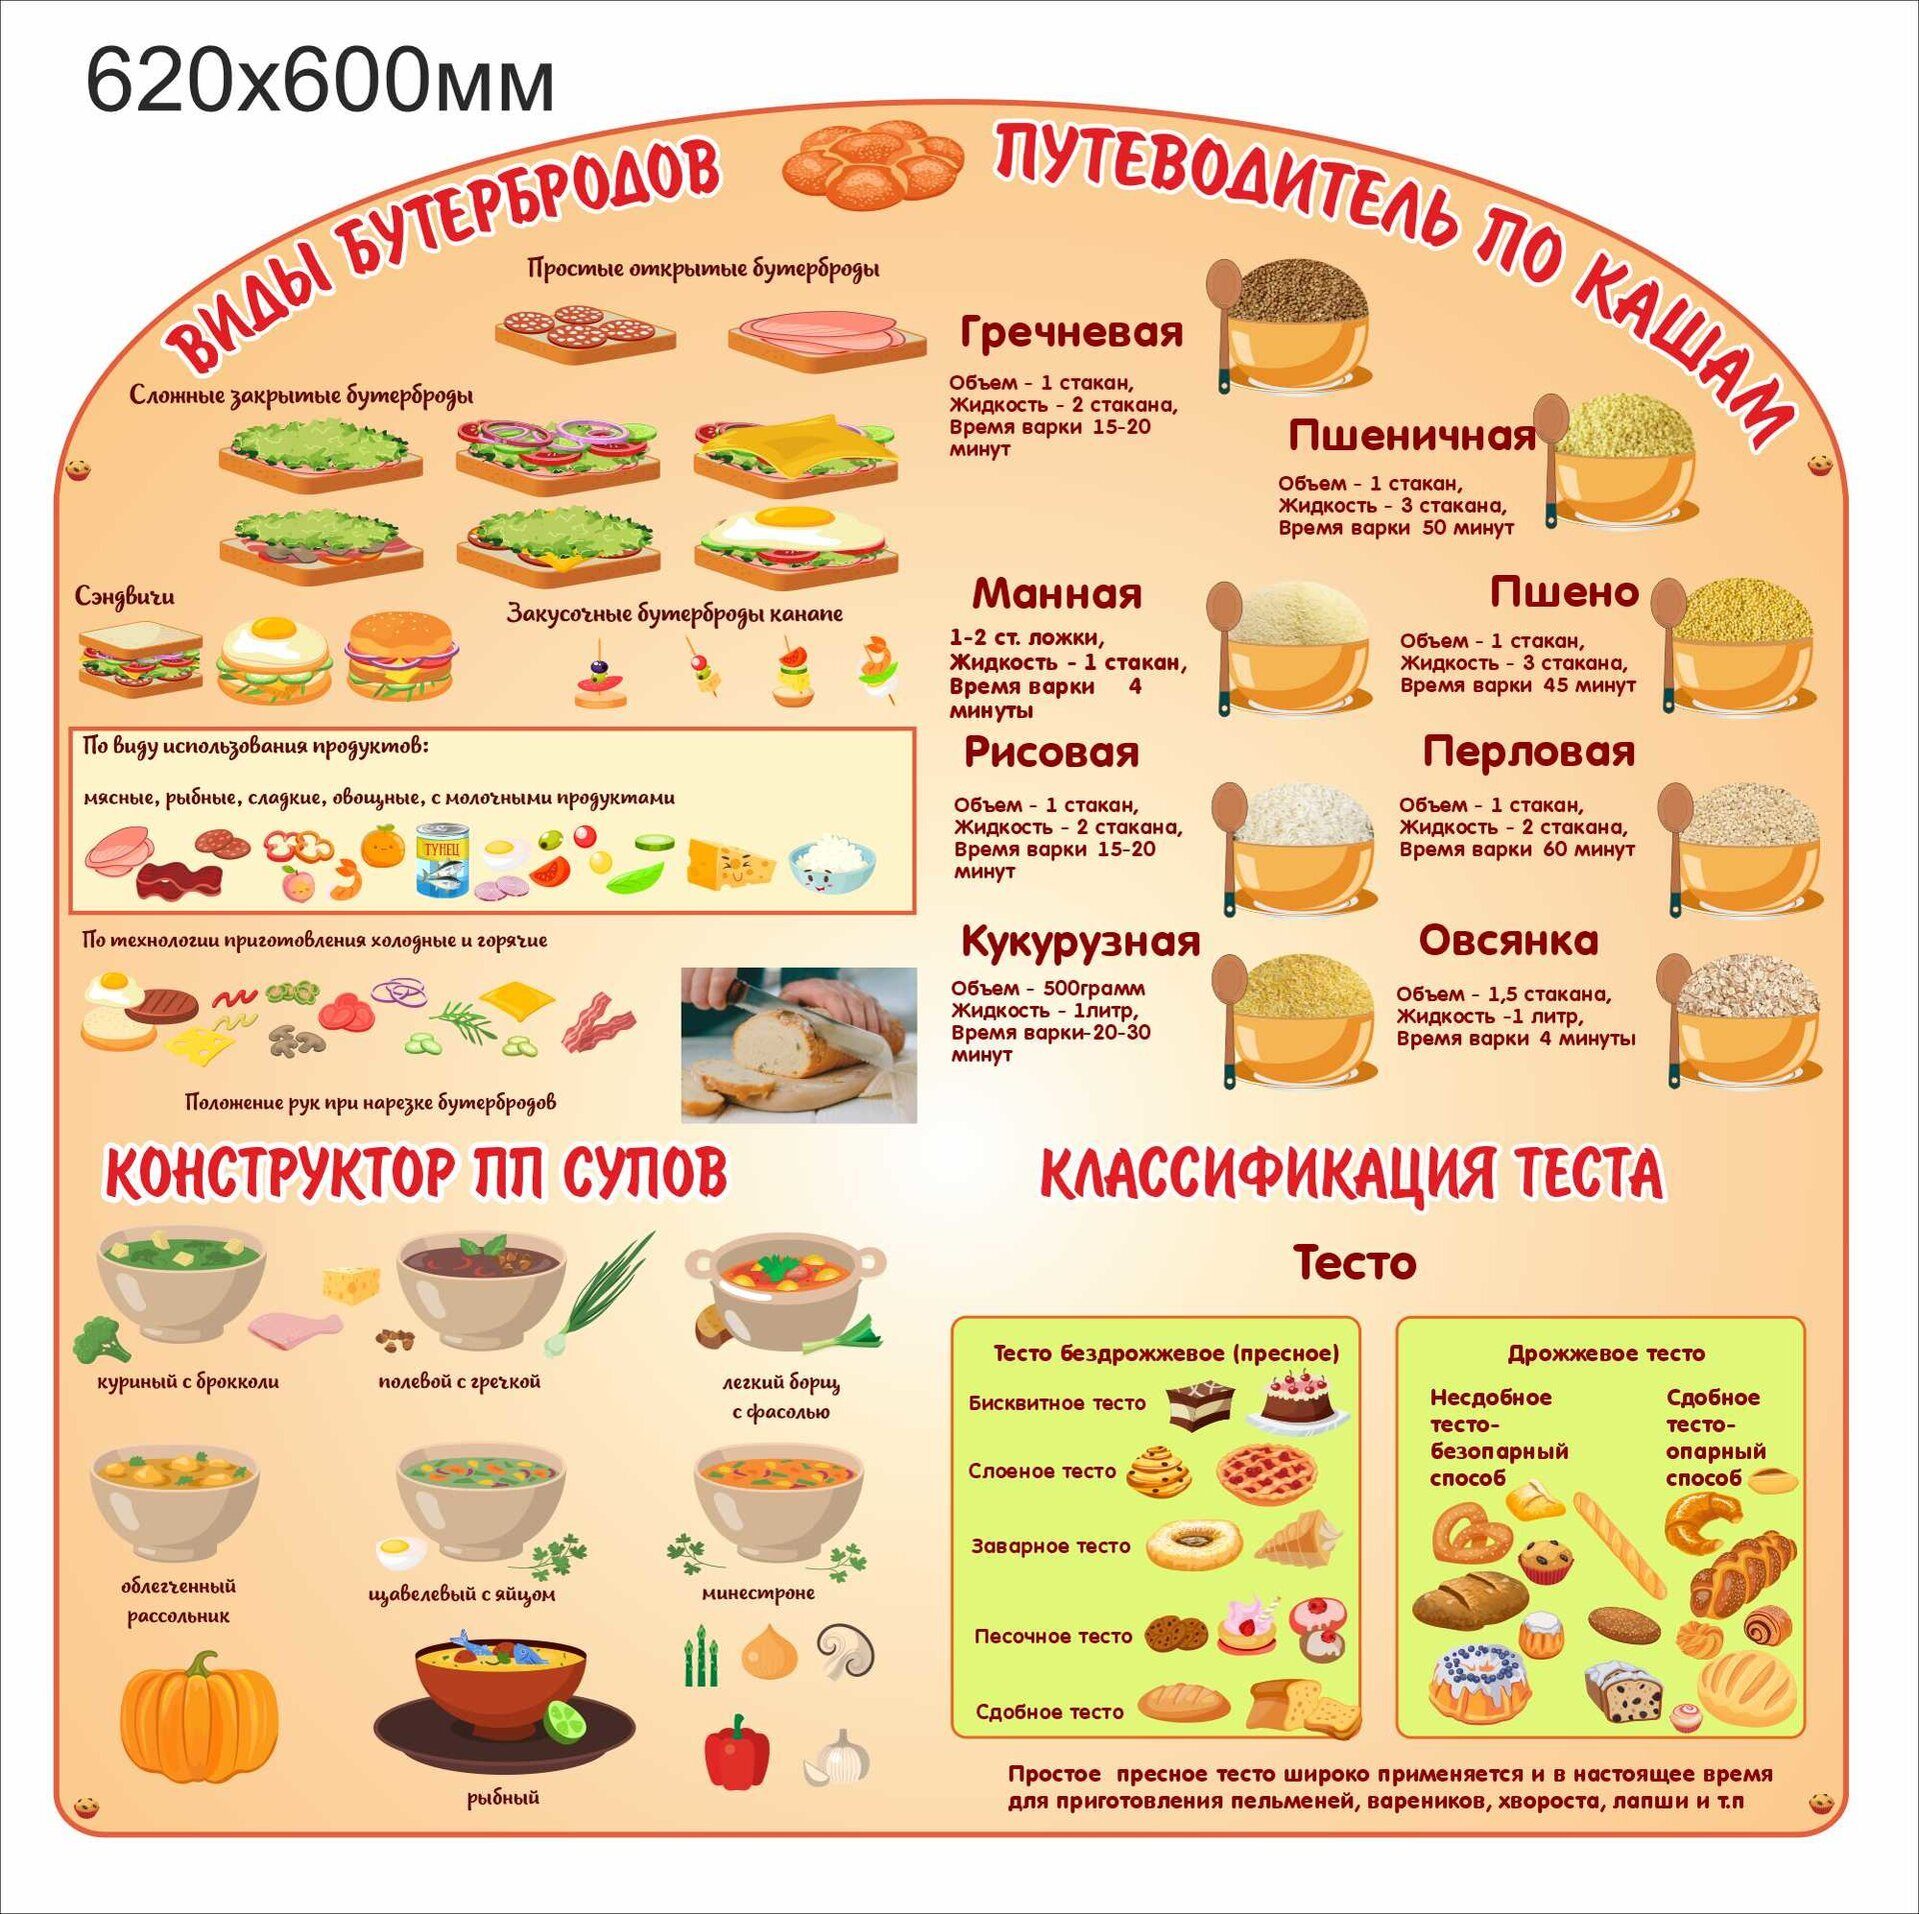 1950 Стенд для столовой, виды бутербродов, путеводитель по кашам, конструктор супов, классификация теста